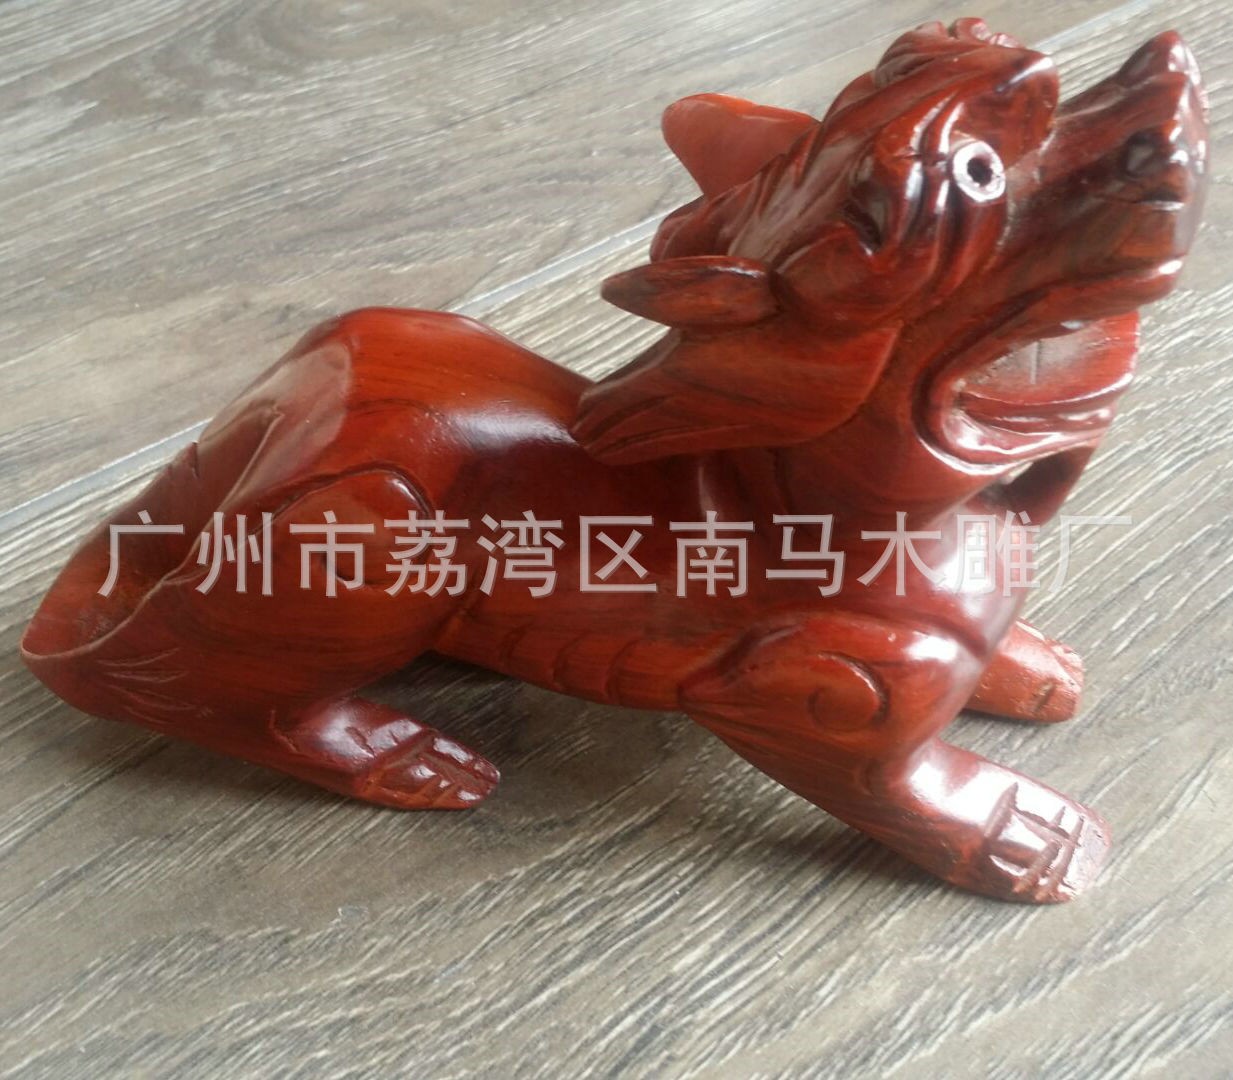 招财小红色貔貅摆件 雕刻木头工艺品特价 纯手工雕刻创意家居摆件